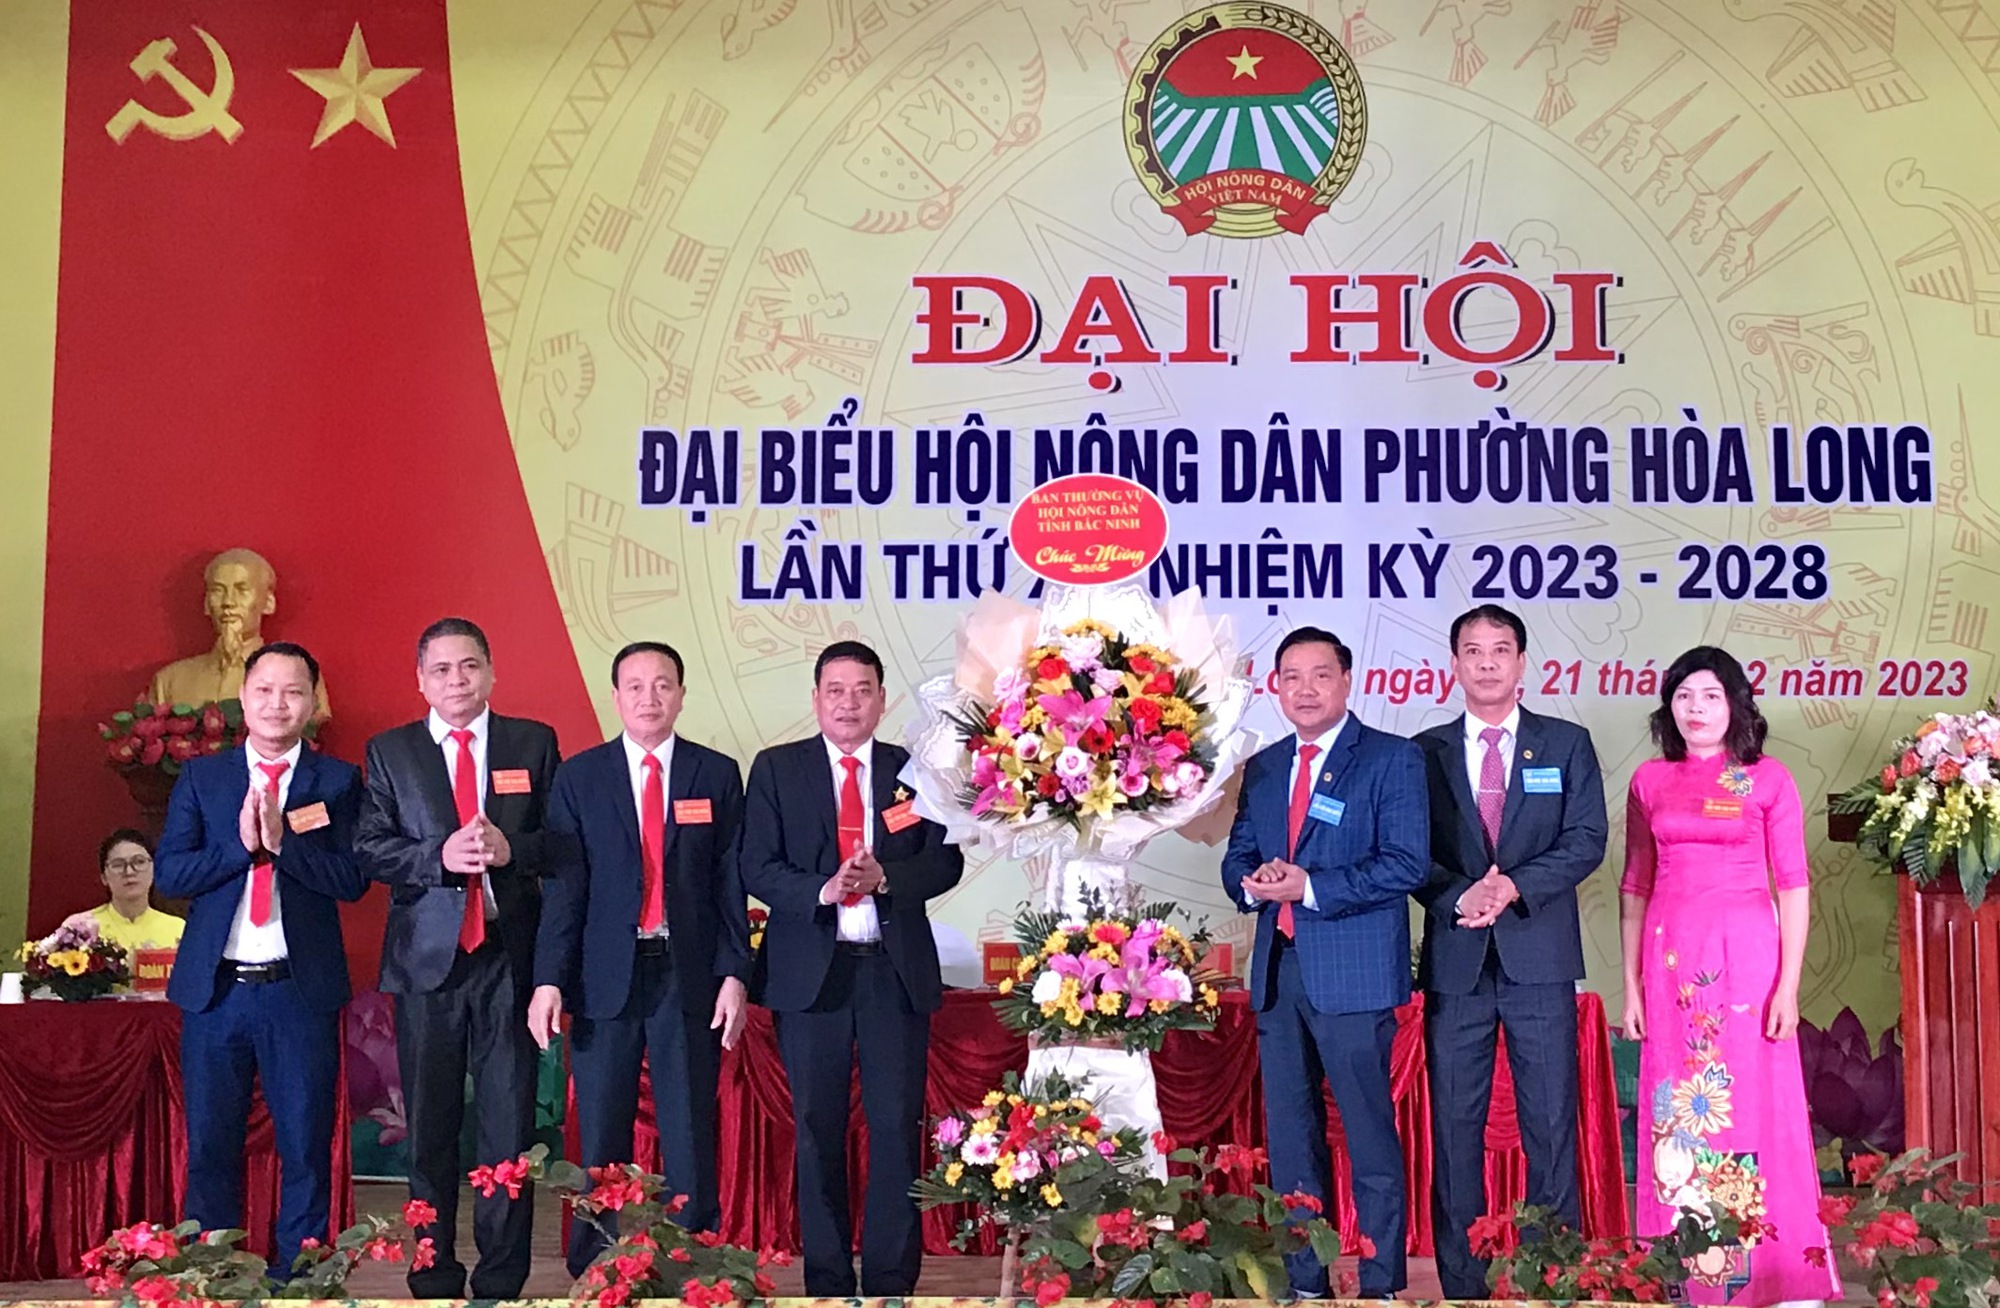 Bắc Ninh: Ghi nhận từ thành công Đại hội Hội Nông dân cấp cơ sở - Ảnh 1.